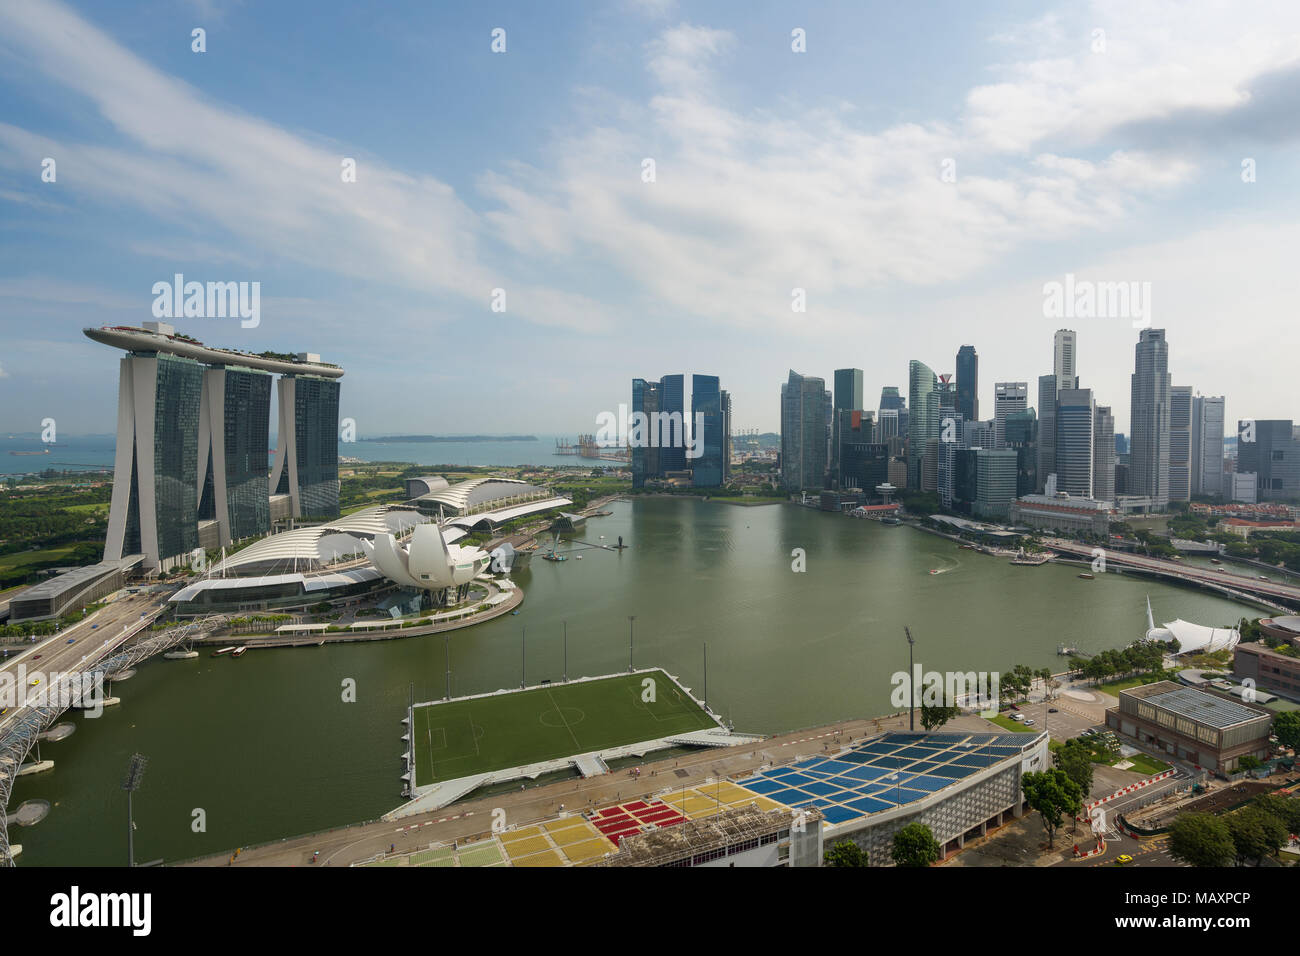 Panorama du quartier des affaires de Singapour Singapour skyline et gratte-ciel du matin, à Marina Bay, Singapour. Asie Banque D'Images